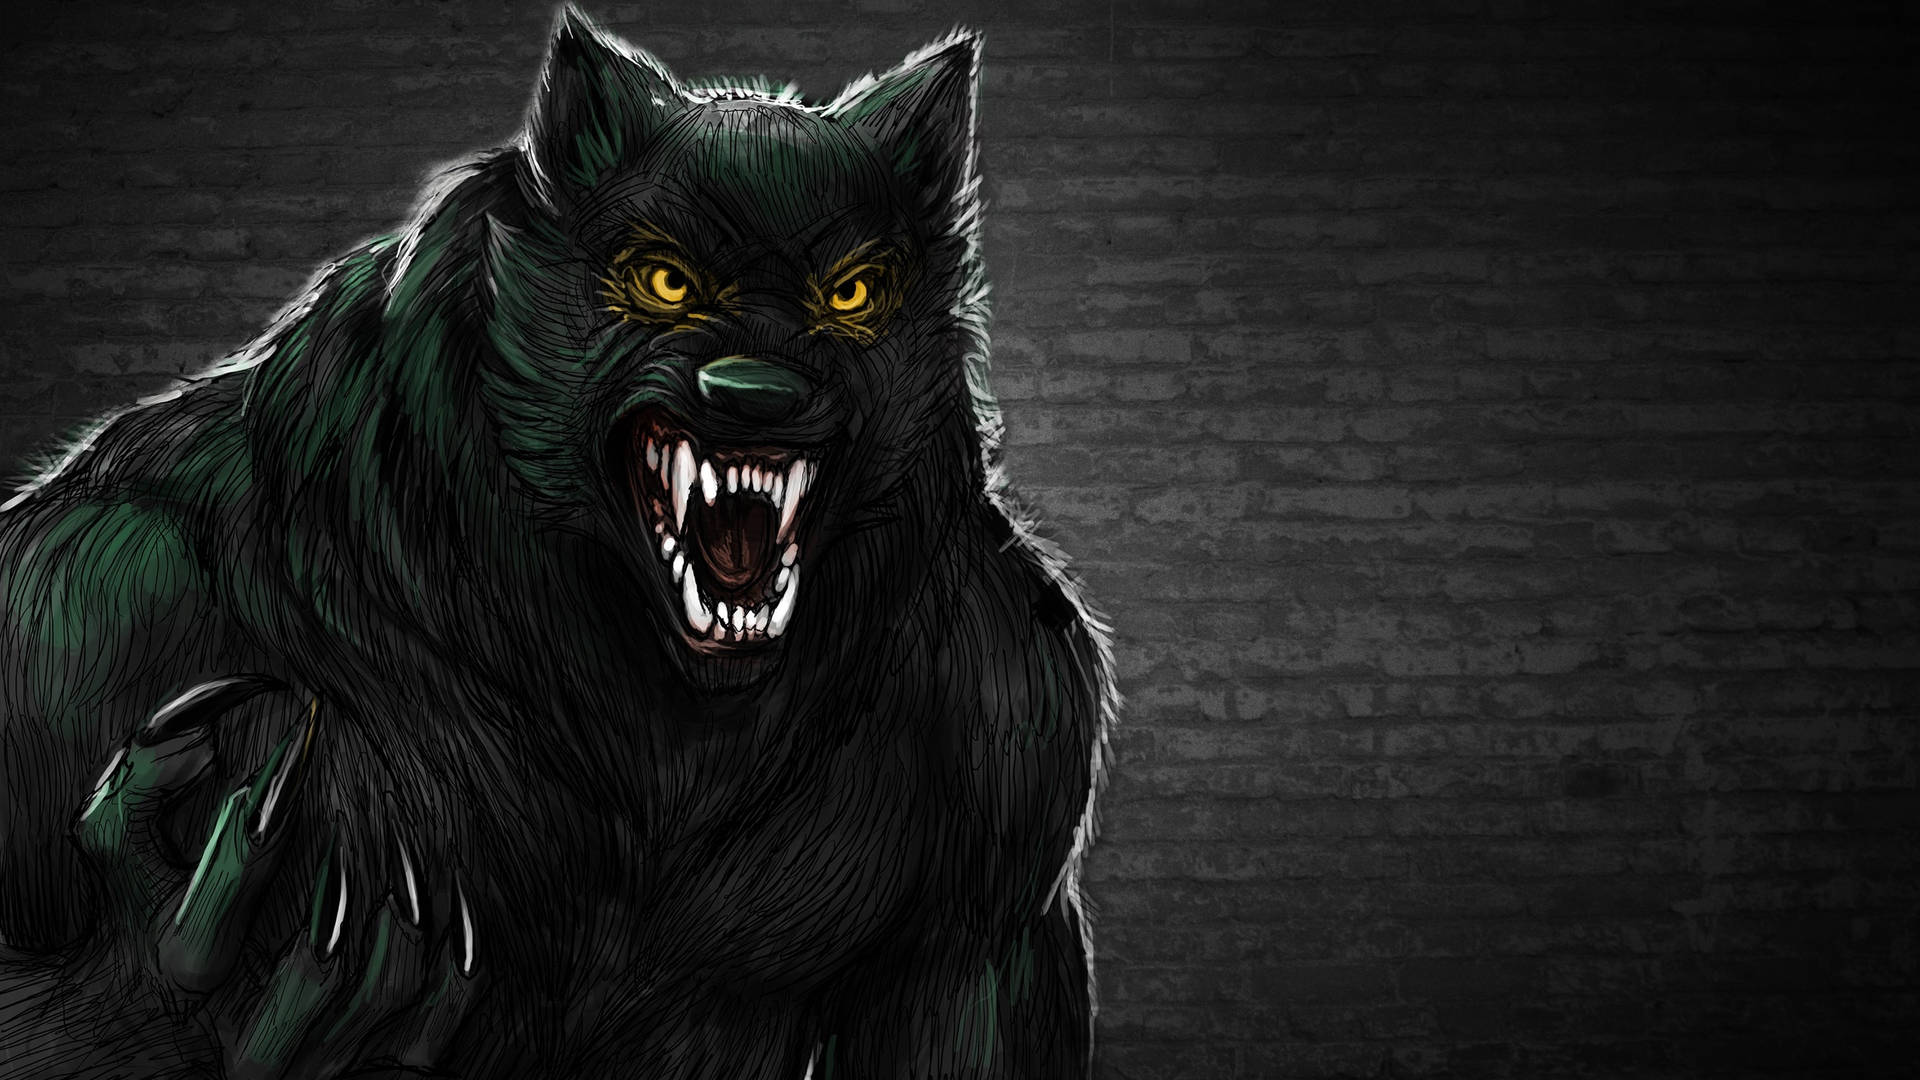 THE WOLFMAN dark werewolf wallpaper  1920x1080  103003  WallpaperUP